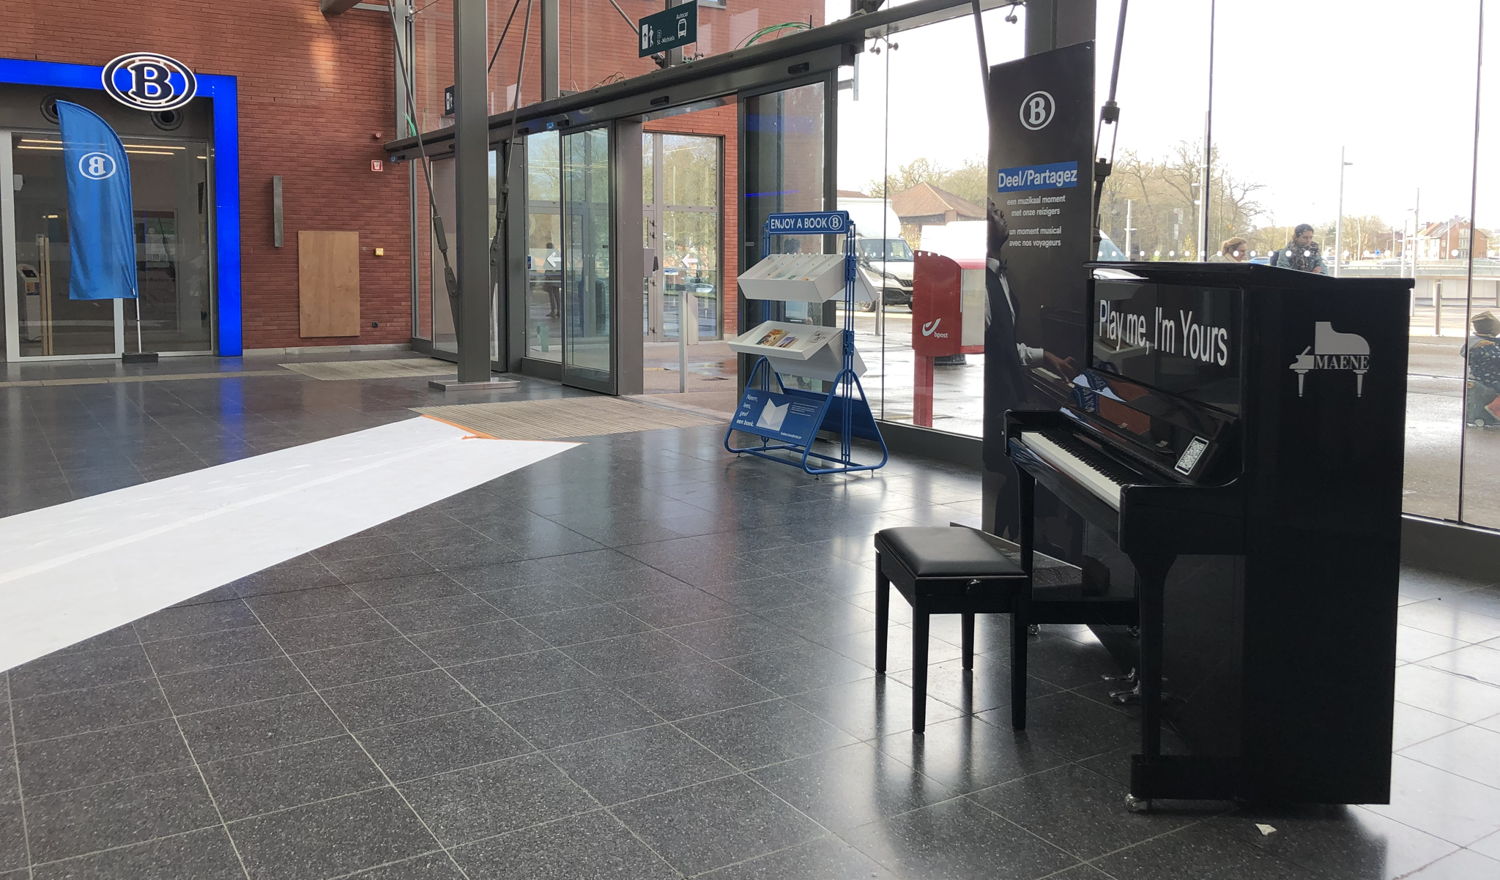 Le piano dans la gare de Bruges